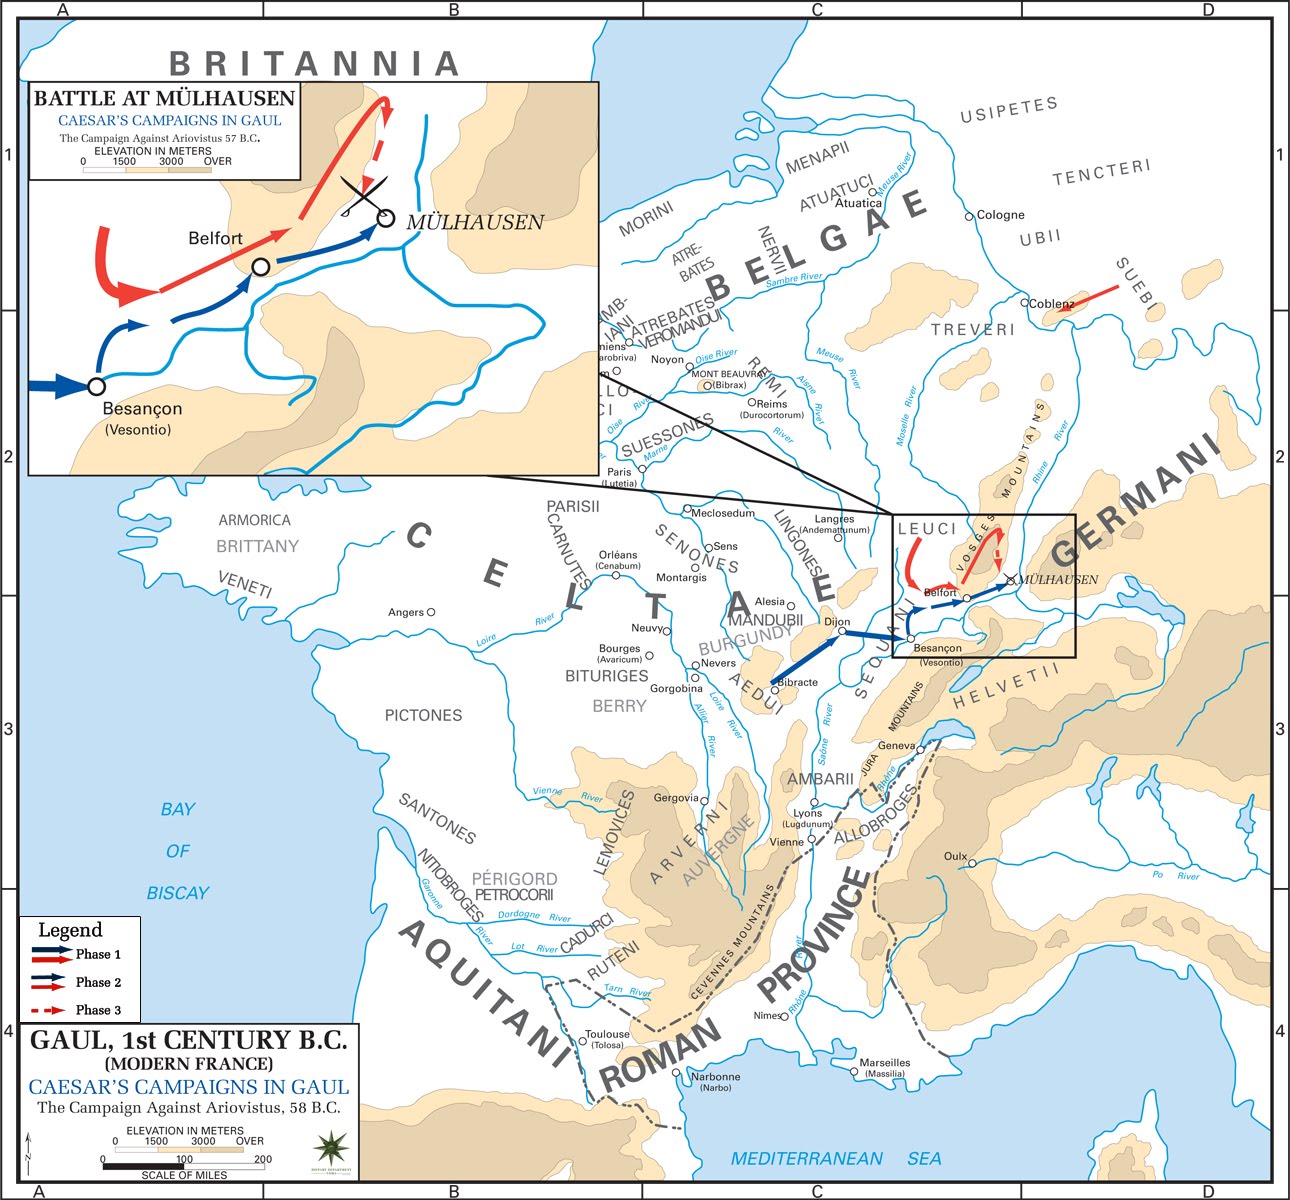 map_caesar_ Campaigns in gaul against aristovistus 57 BC.jpg